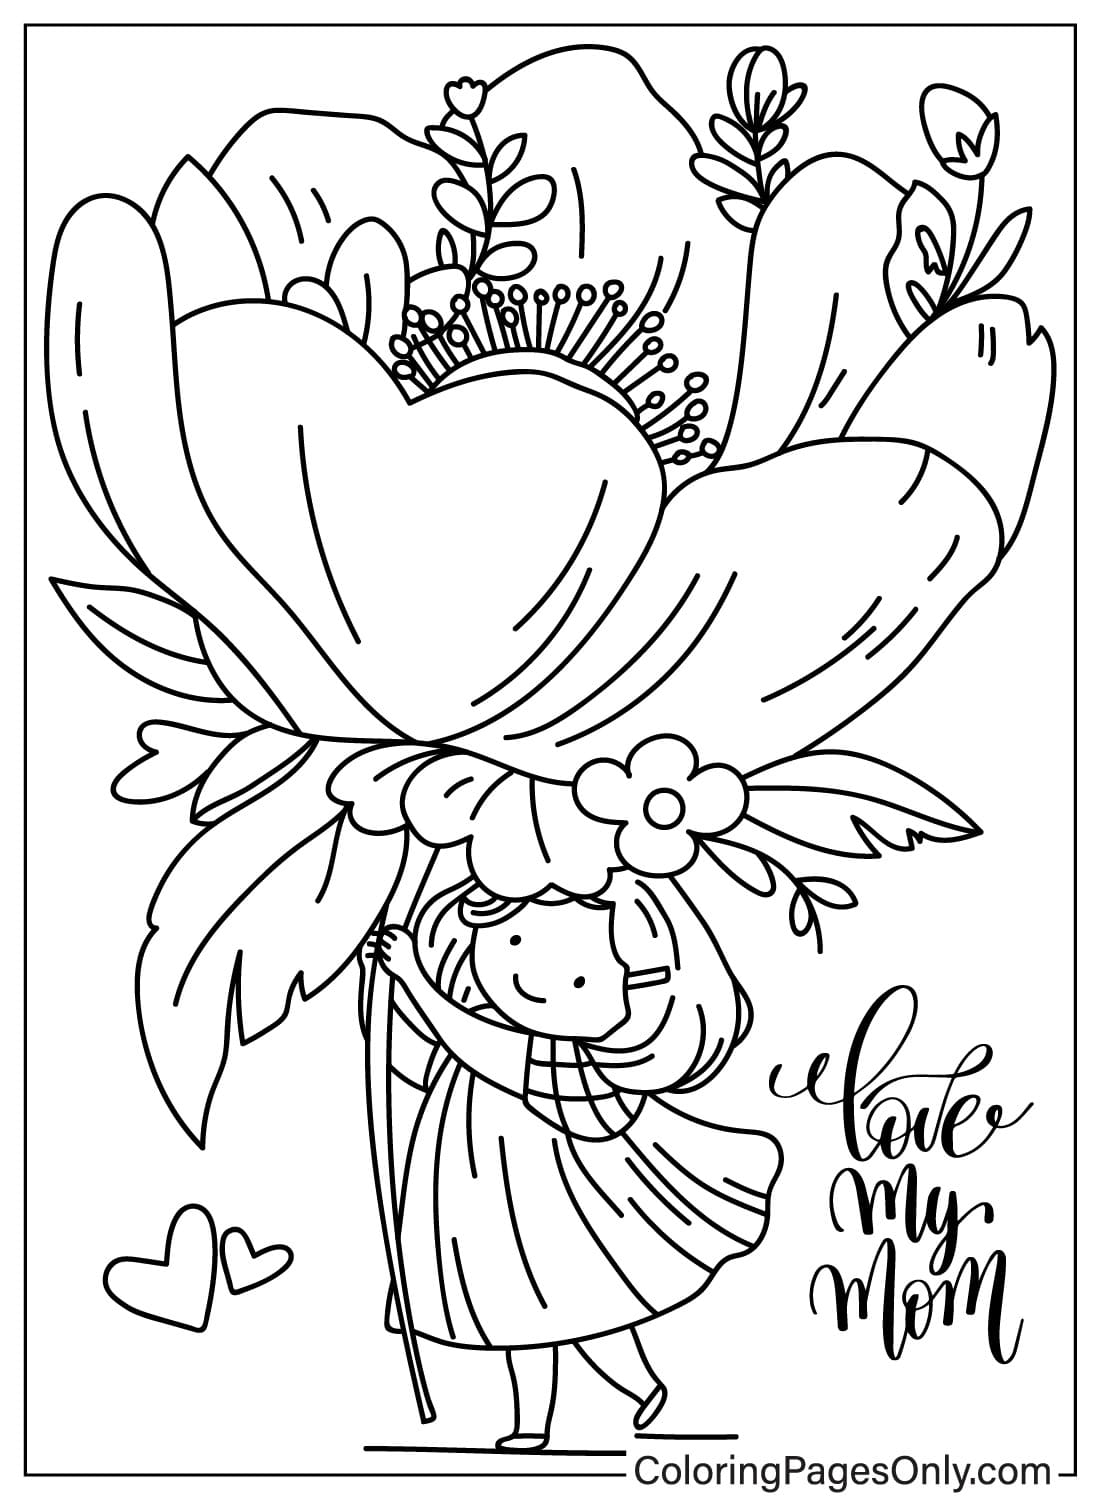 Página para colorir de Girl Love Mom de I Love Mom